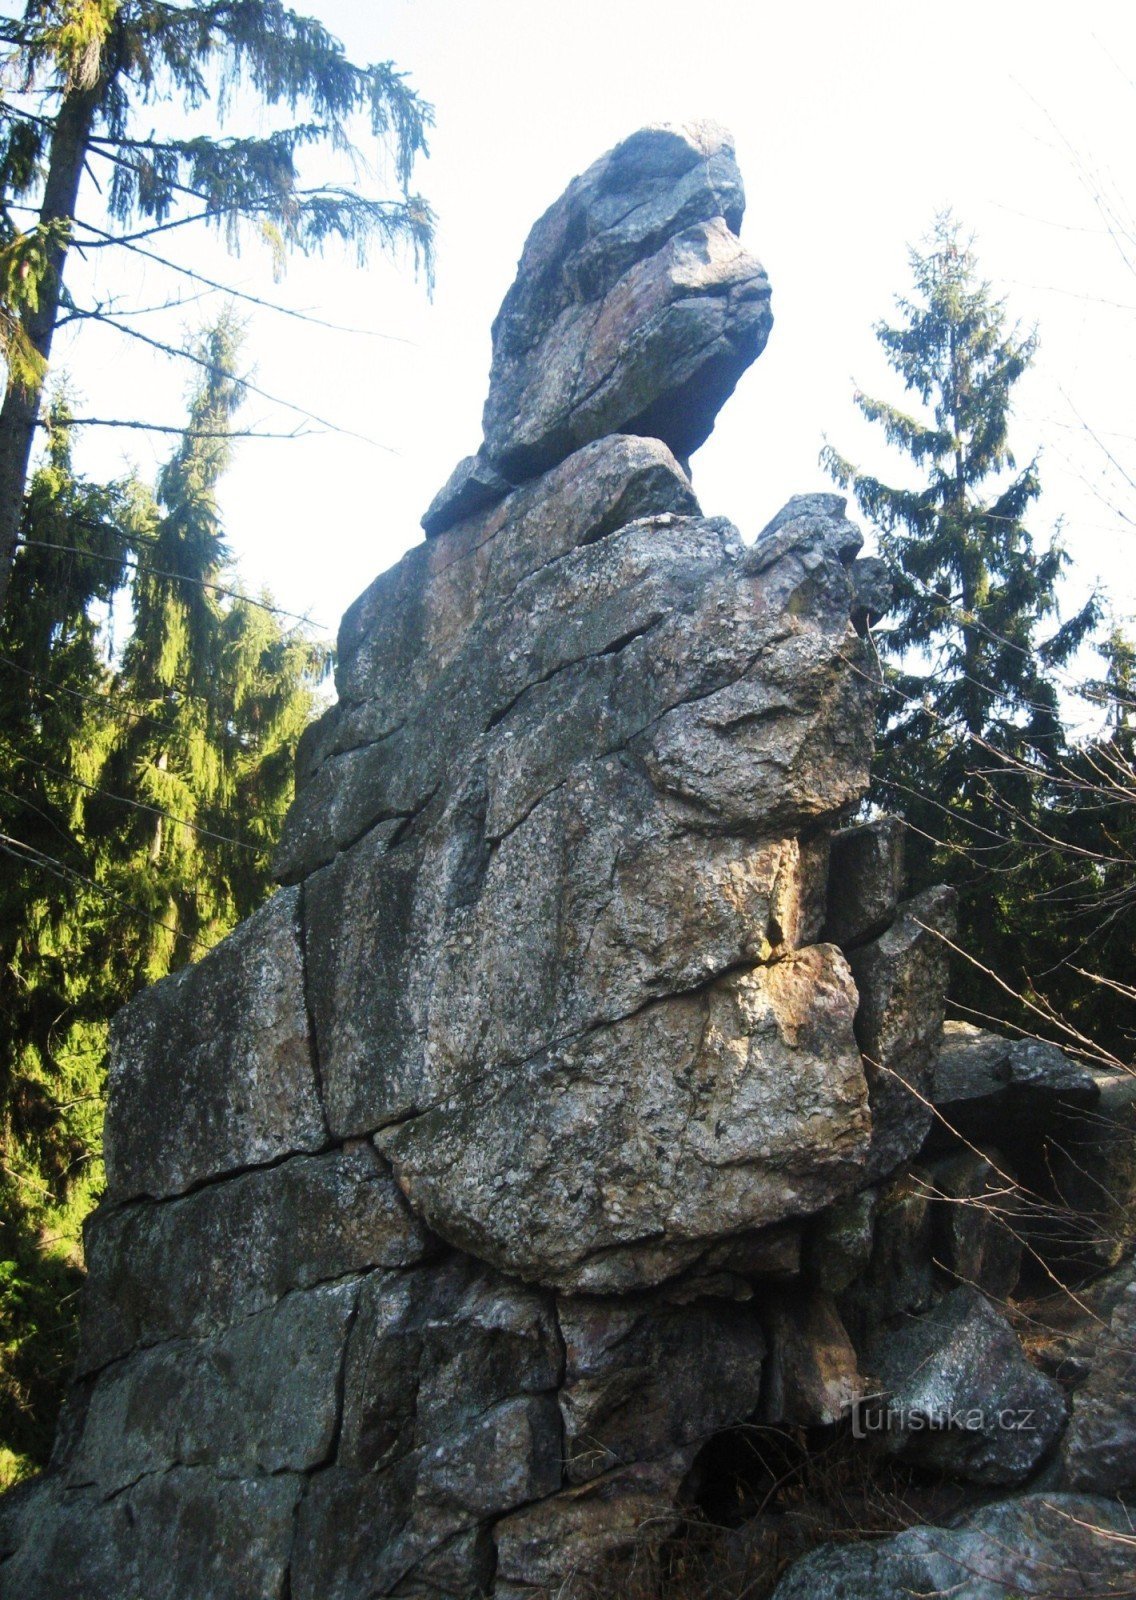 Três pedras - 559 m - Bradelská vrchovina